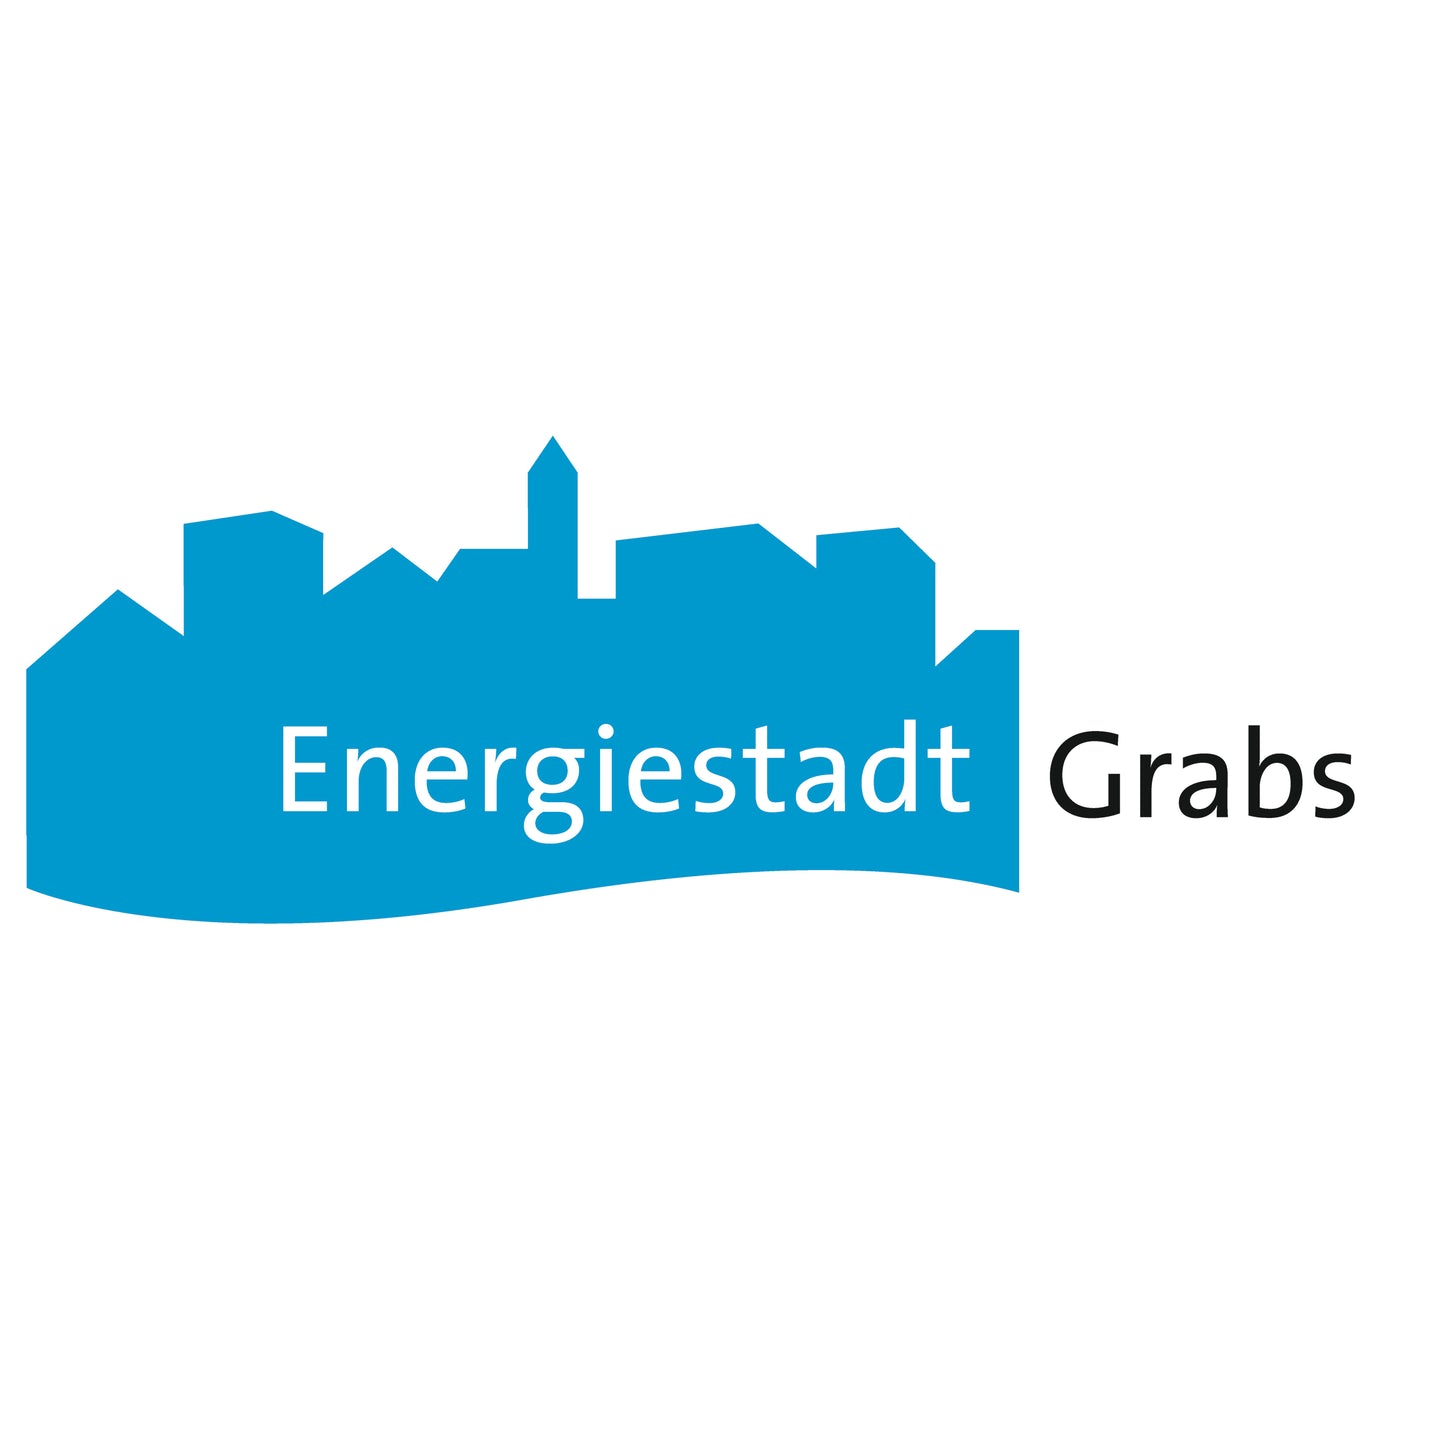 Energiestadt Grabs, SG